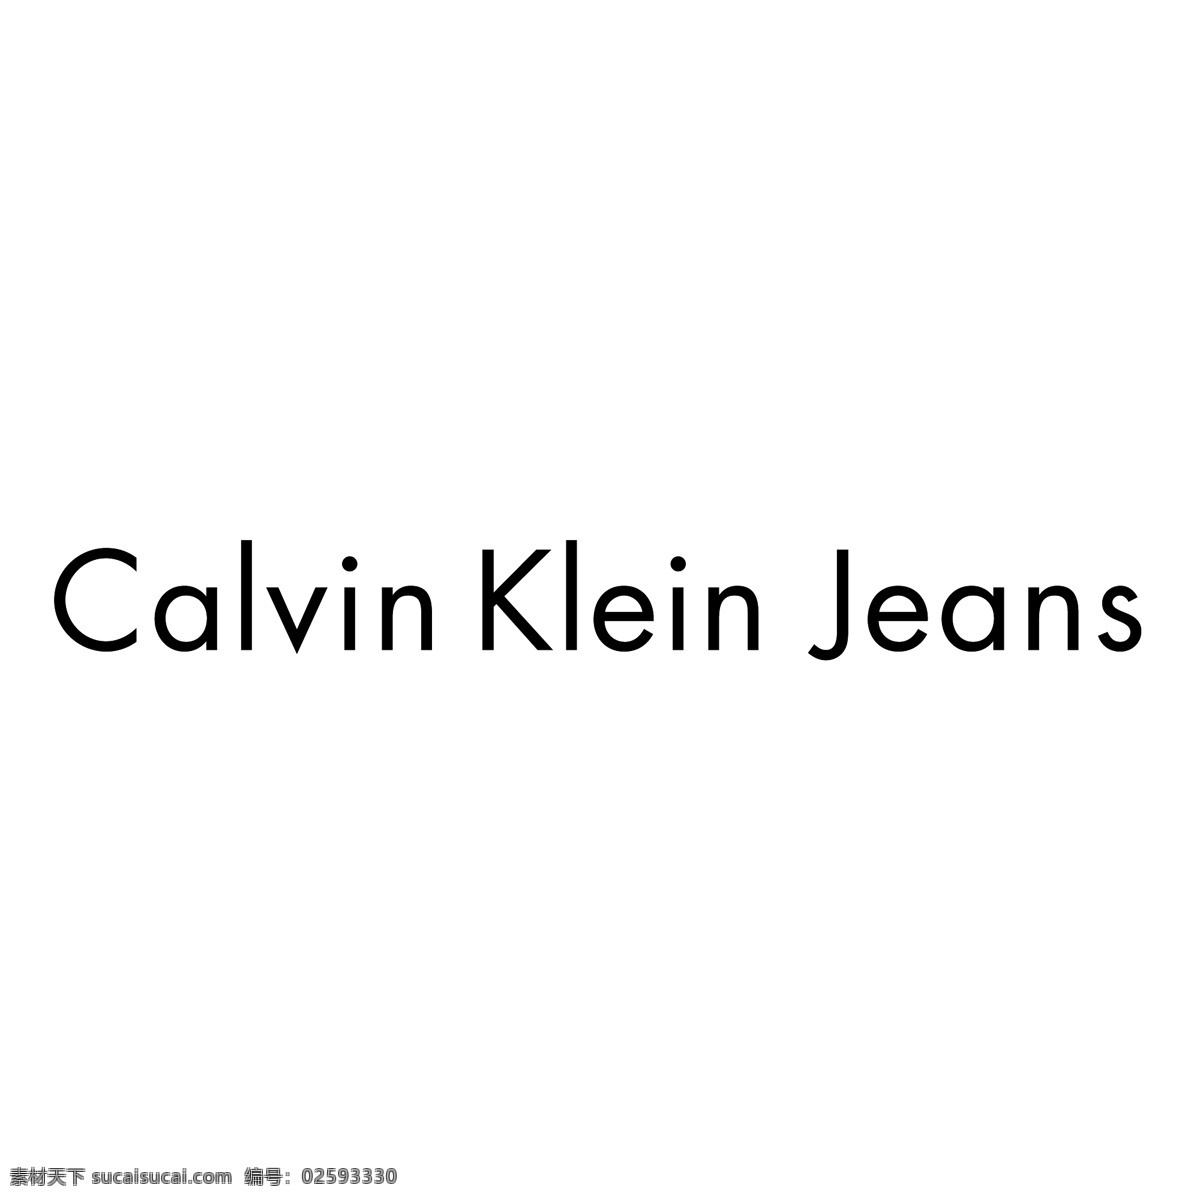 加尔文 卡尔文 克莱因 牛仔裤 卡尔文牛仔裤 卡尔文矢量 矢量 标志 图像 免费 图形 蓝色